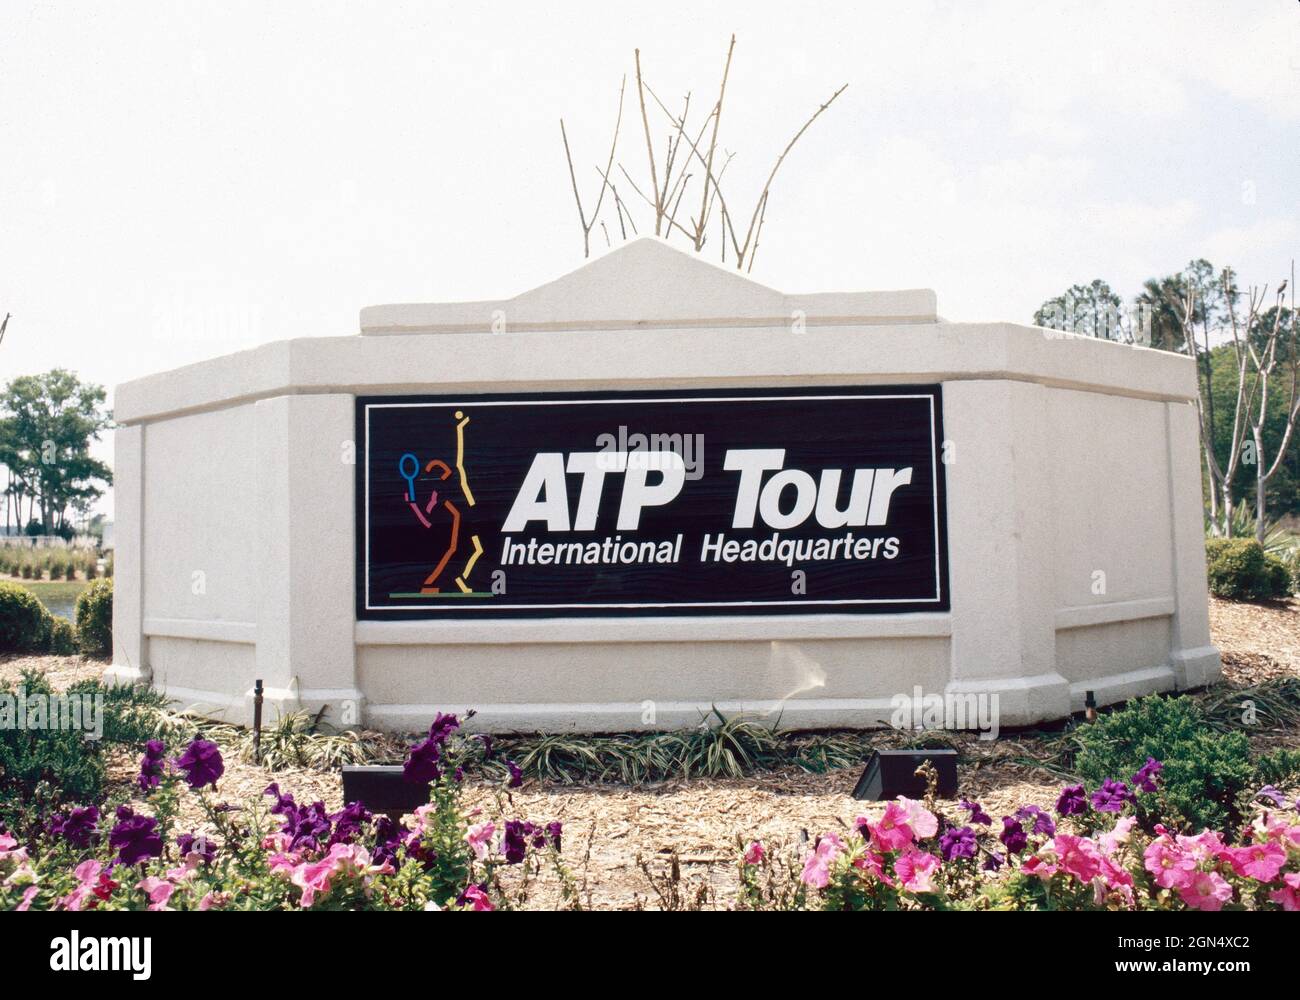 ATP tennis Tournement International Headquarters, années 80 Banque D'Images